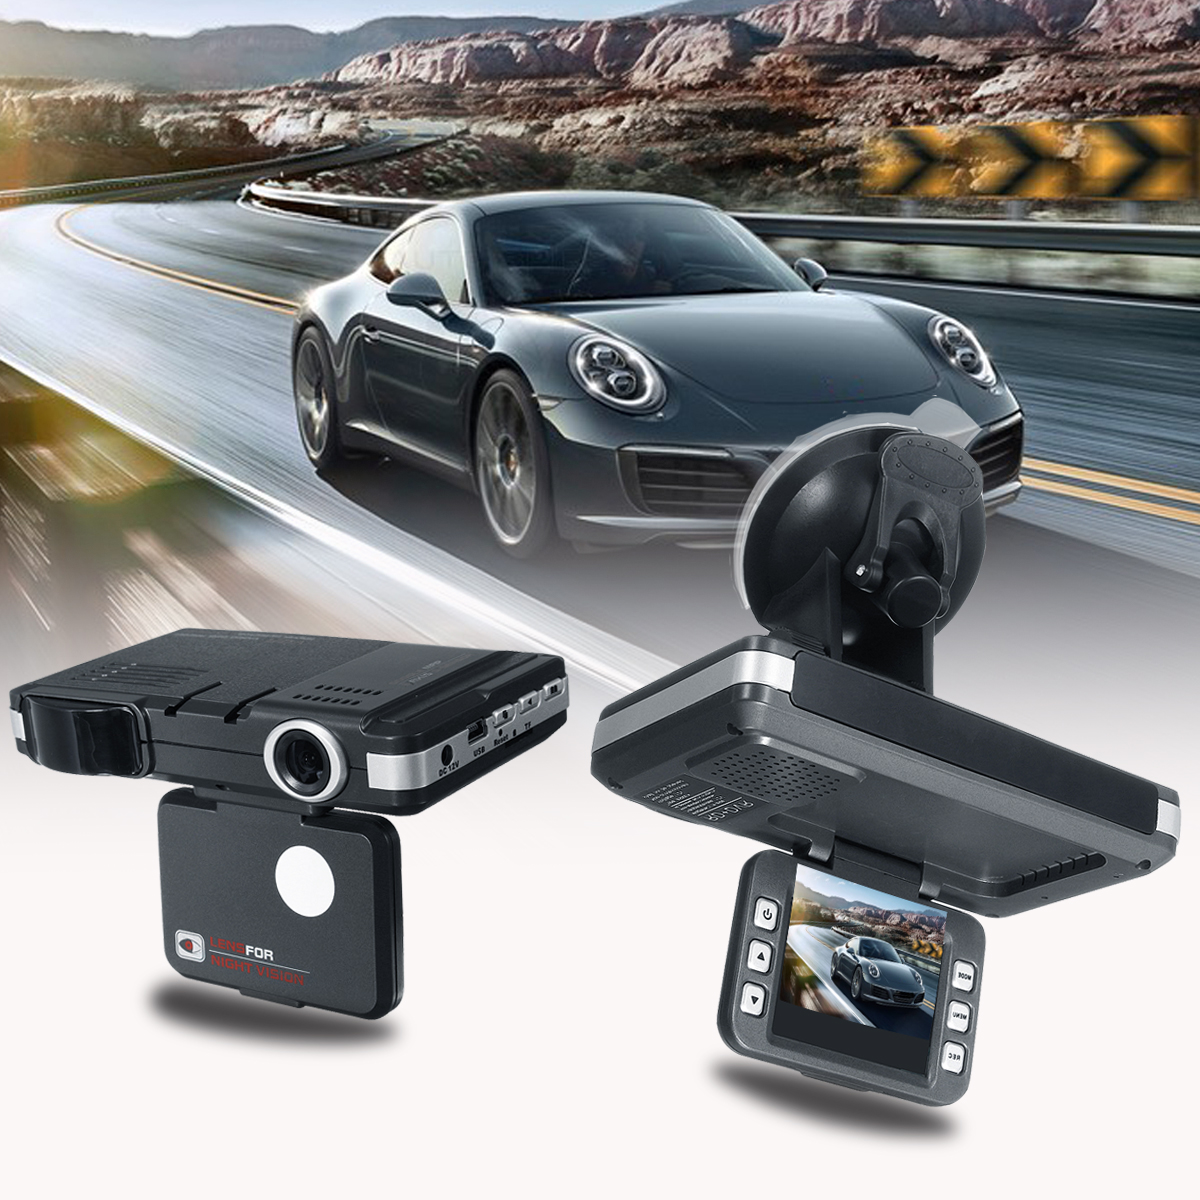 Видеорегистратор какой лучше купить для автомобиля отзывы. Видеорегистратор Radar Speed + 2in1. DVR for car with Radar Detector. Автомобильный видеорегистратор rsnt96220, 1 камера,.